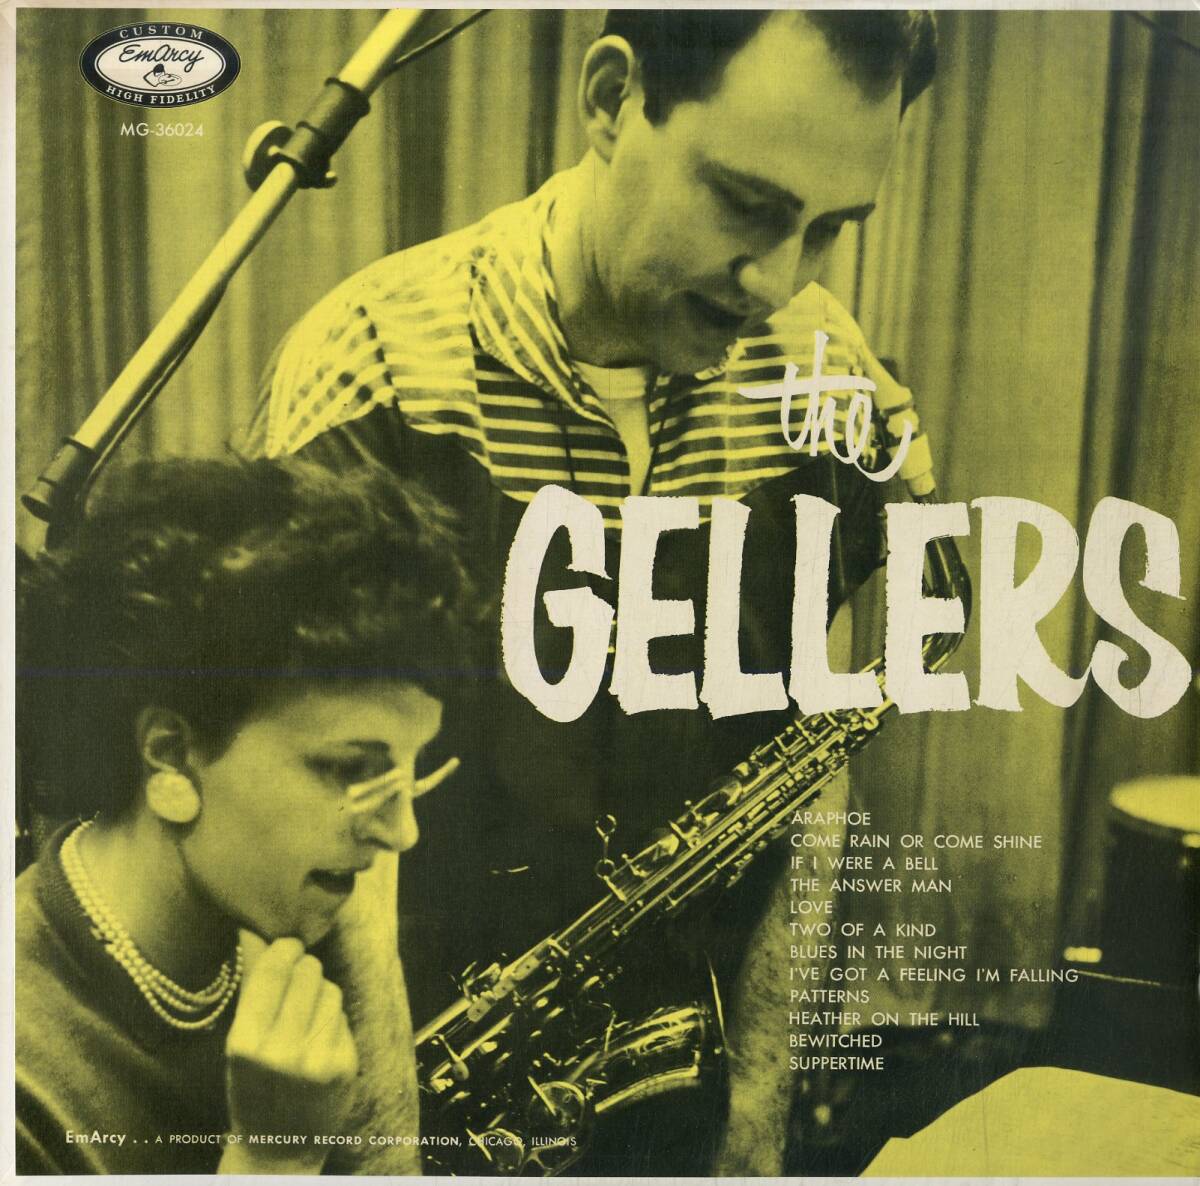 A00590607/LP/ハーブ・ゲラー / ロレイン・ゲラー「The Gellers (1985年・195J-54・クールジャズ・バップ)」の画像1